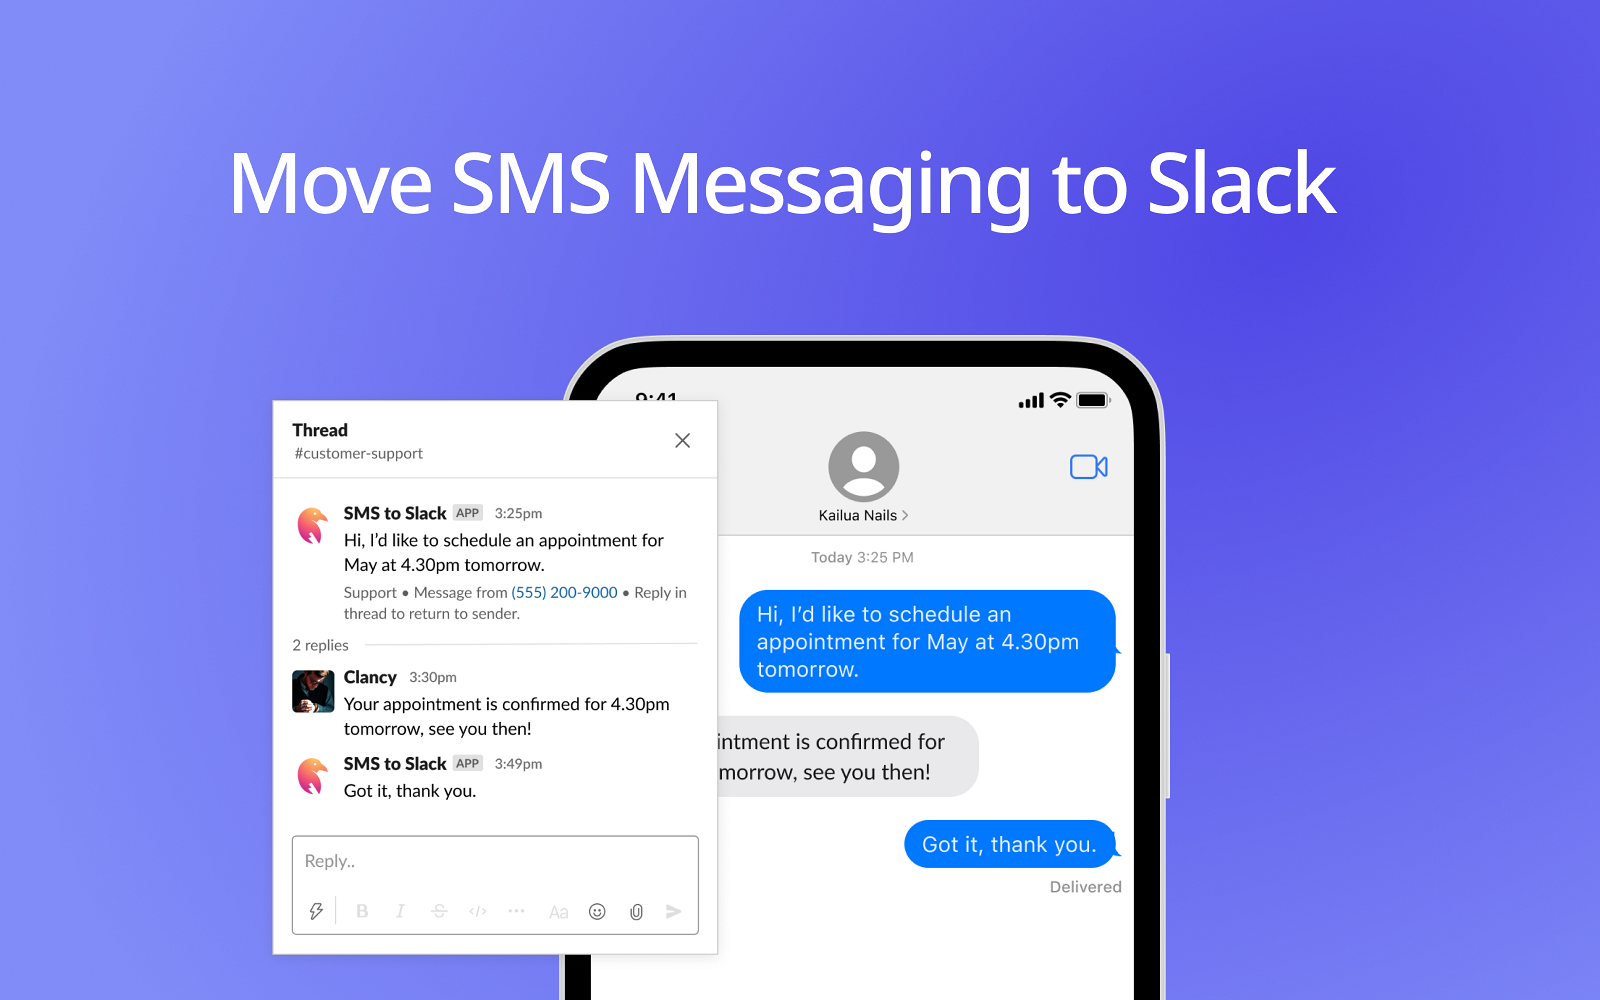 SMS to Slack